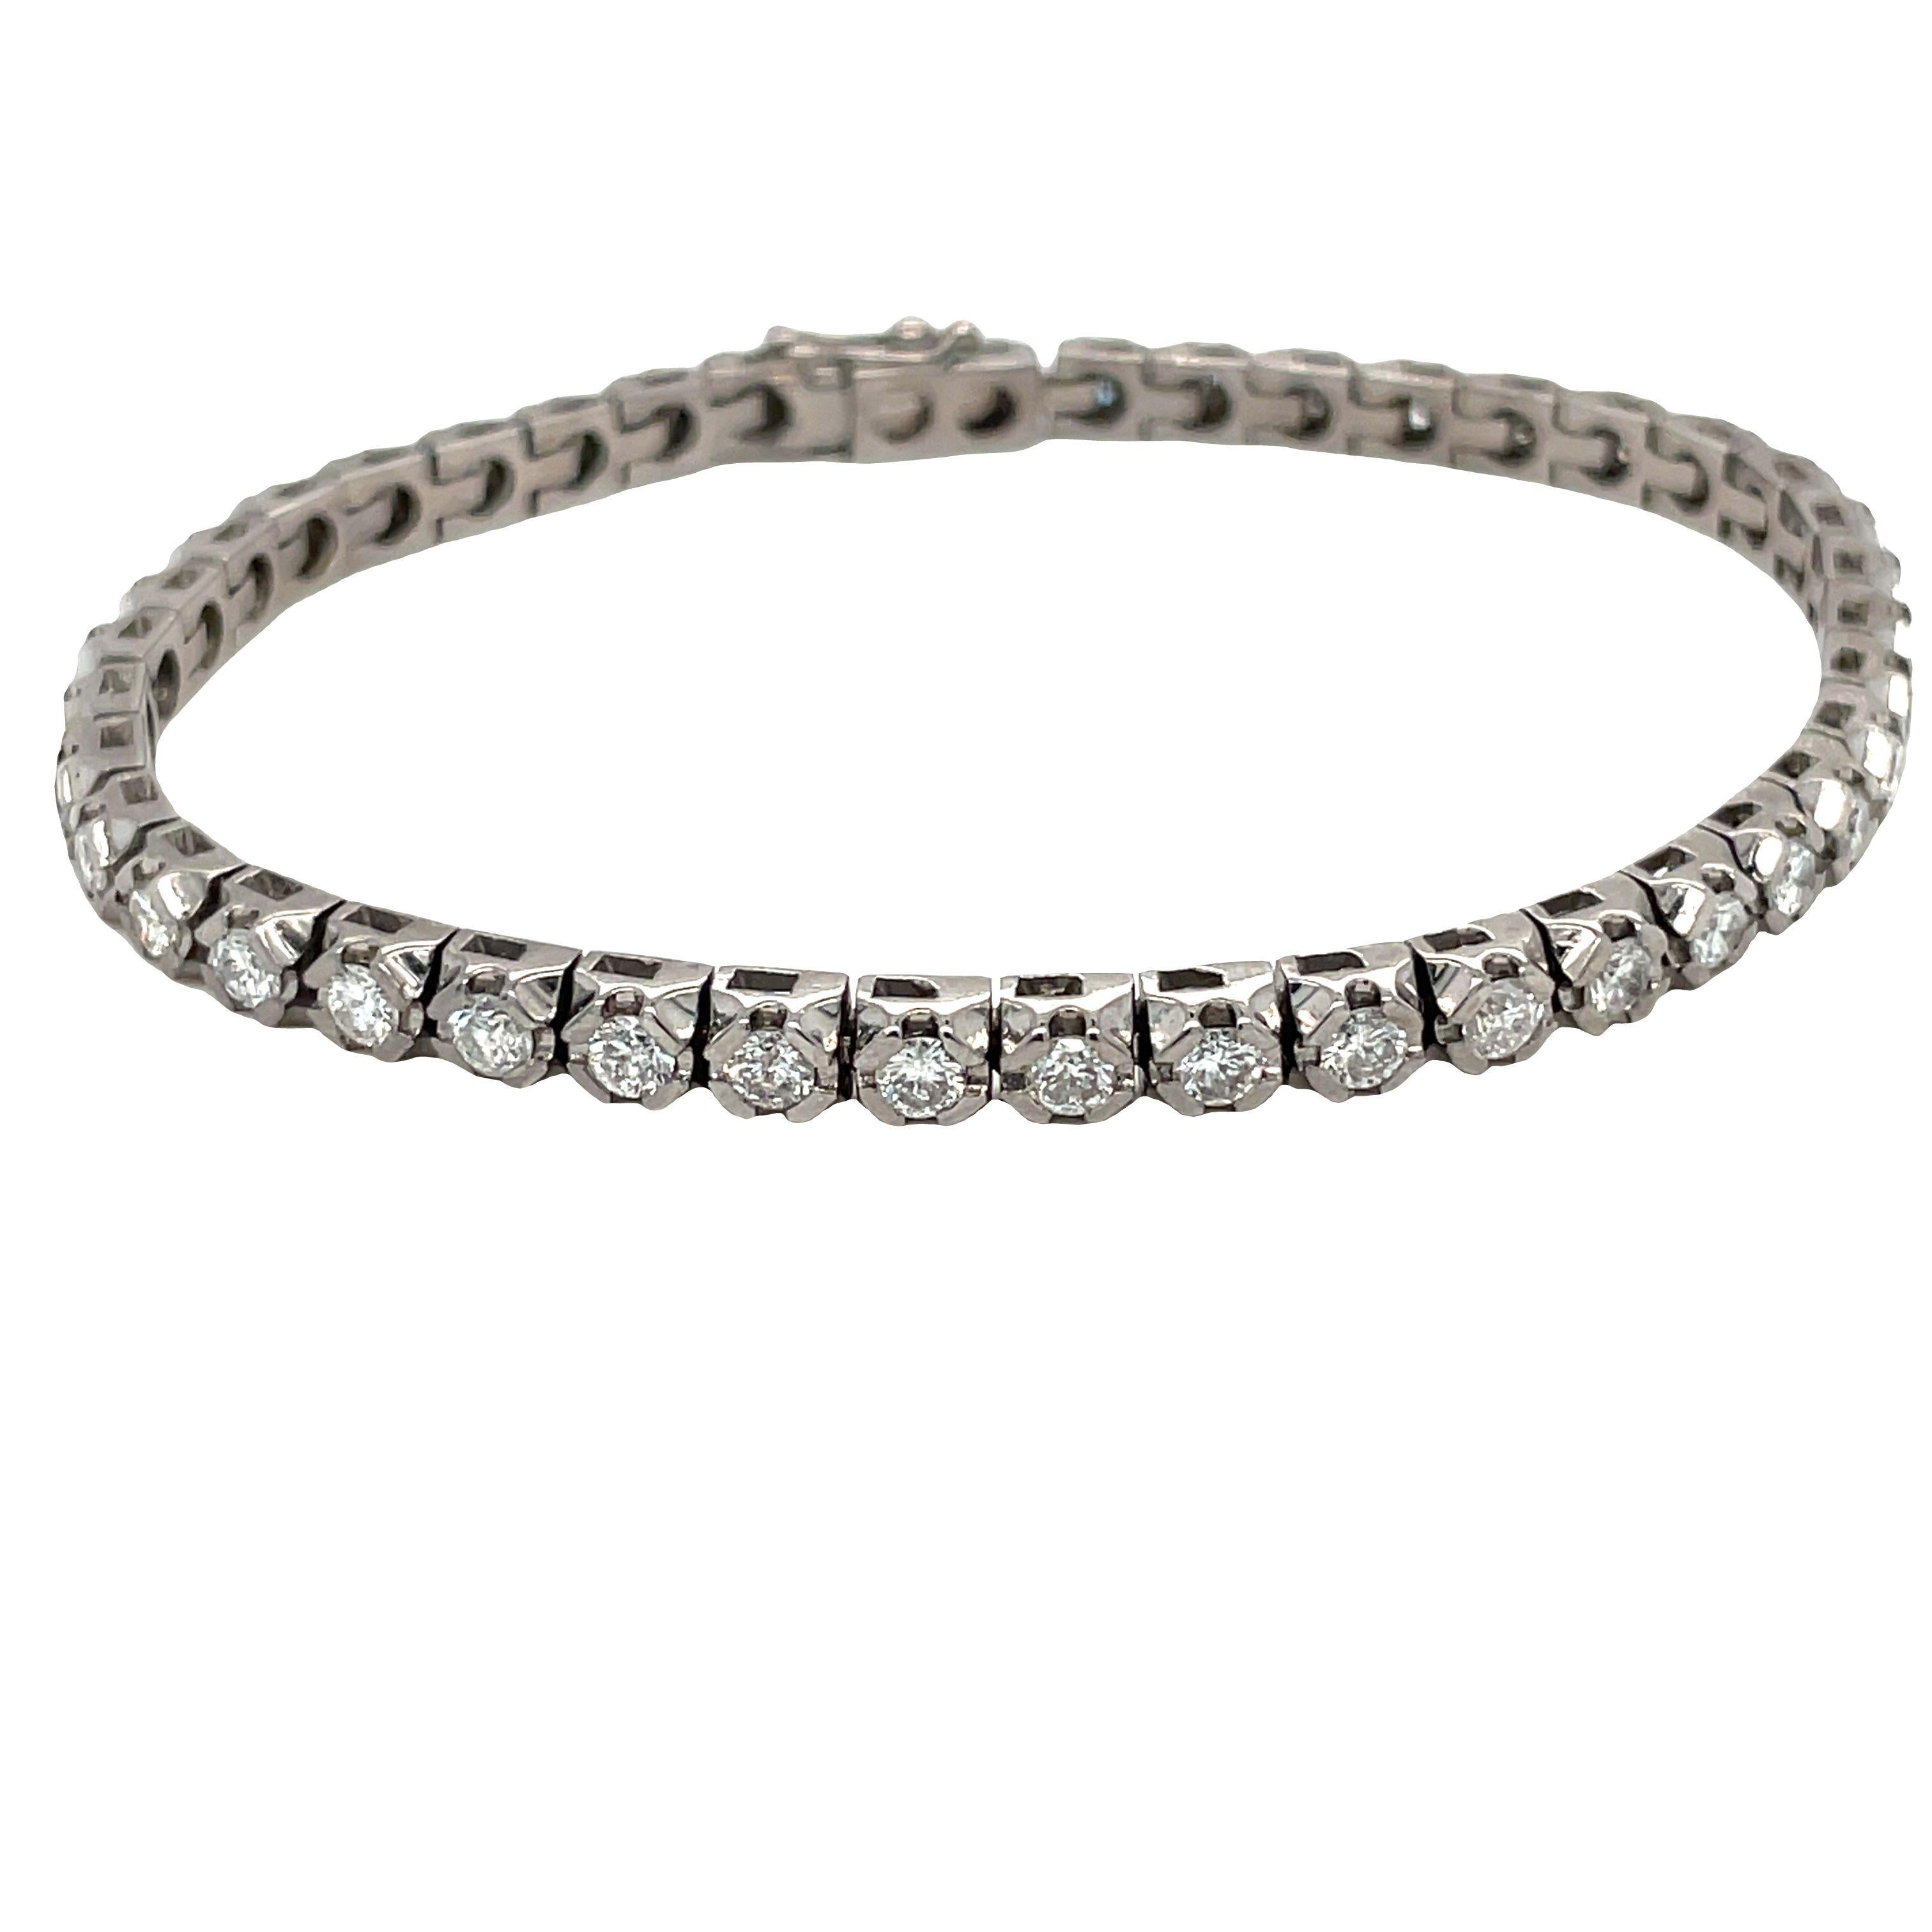 Ce charmant bracelet de tennis en diamants est aussi éblouissant que sophistiqué. Fabriqué en or blanc 18 carats, ce magnifique bracelet est orné de 42 diamants brillants, chacun délicatement serti dans une monture à 4 griffes carrées. Les diamants